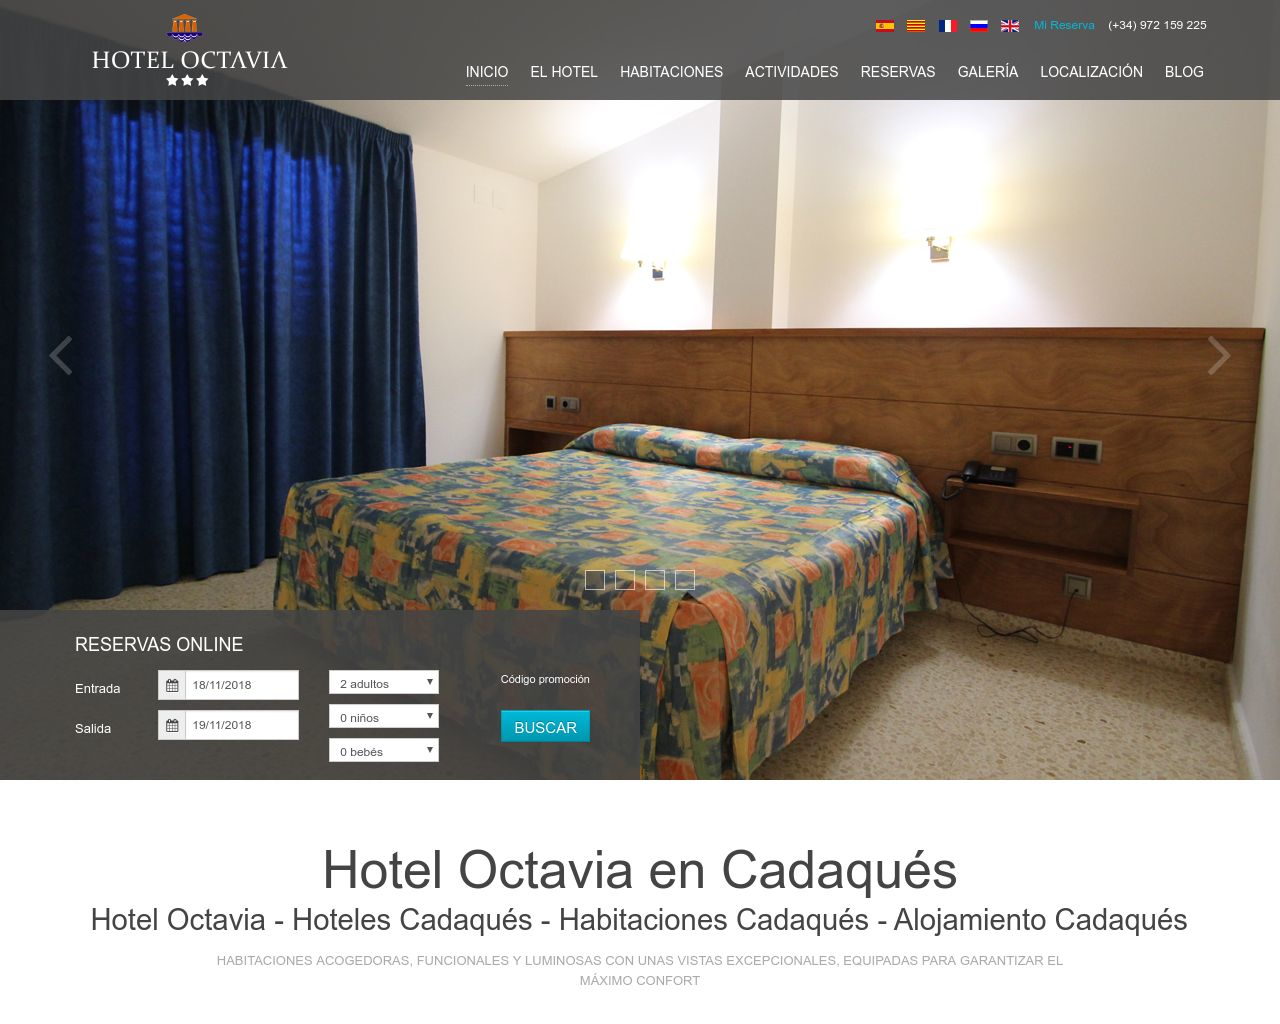 El sitio de la imagen hoteloctavia.net en 1280x1024